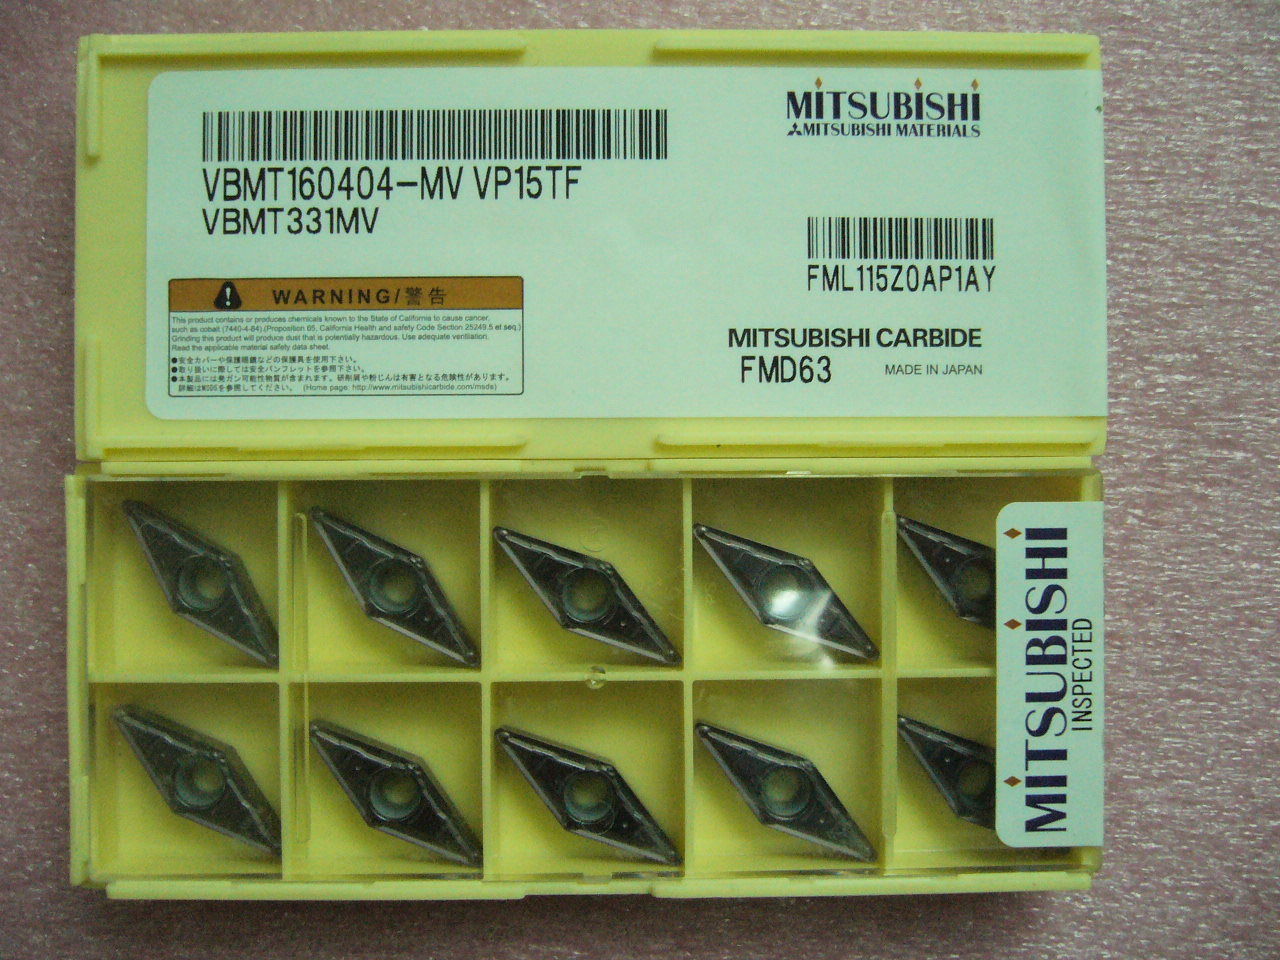 QTY 10x Mitsubishi VBMT331MV VBMT160404-MV VP15TF NEW